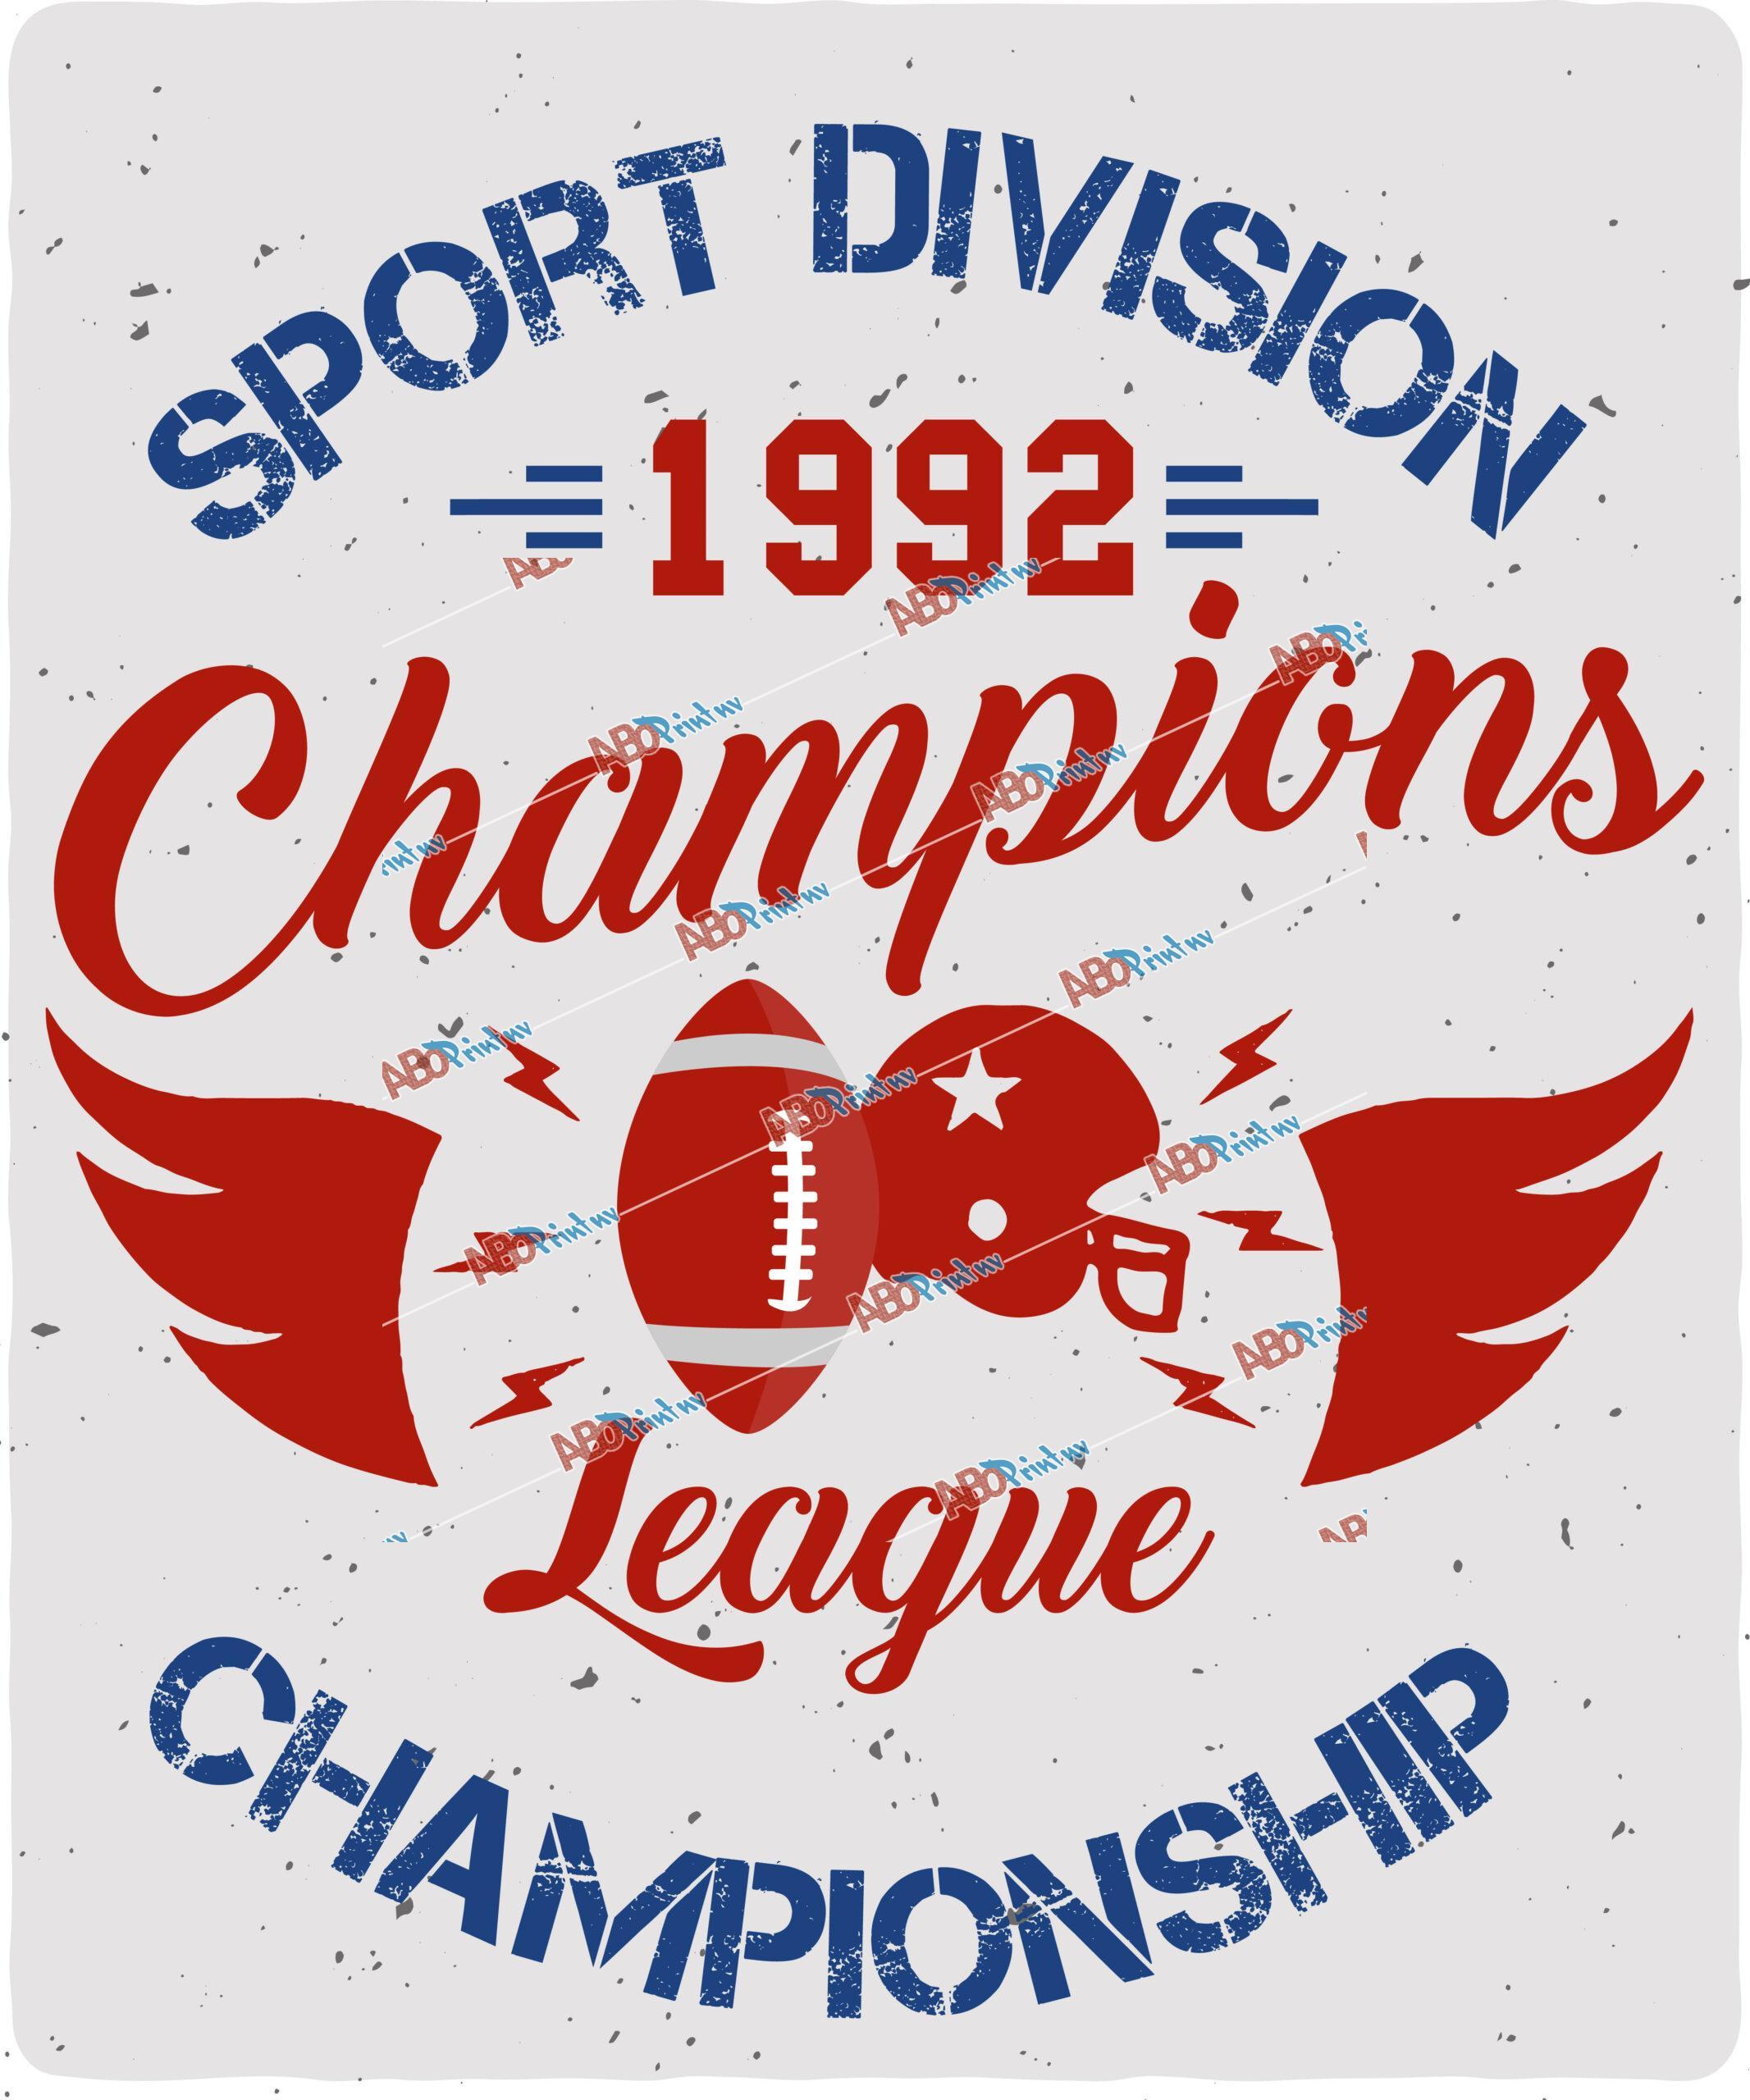 Sport division 1992 champions league